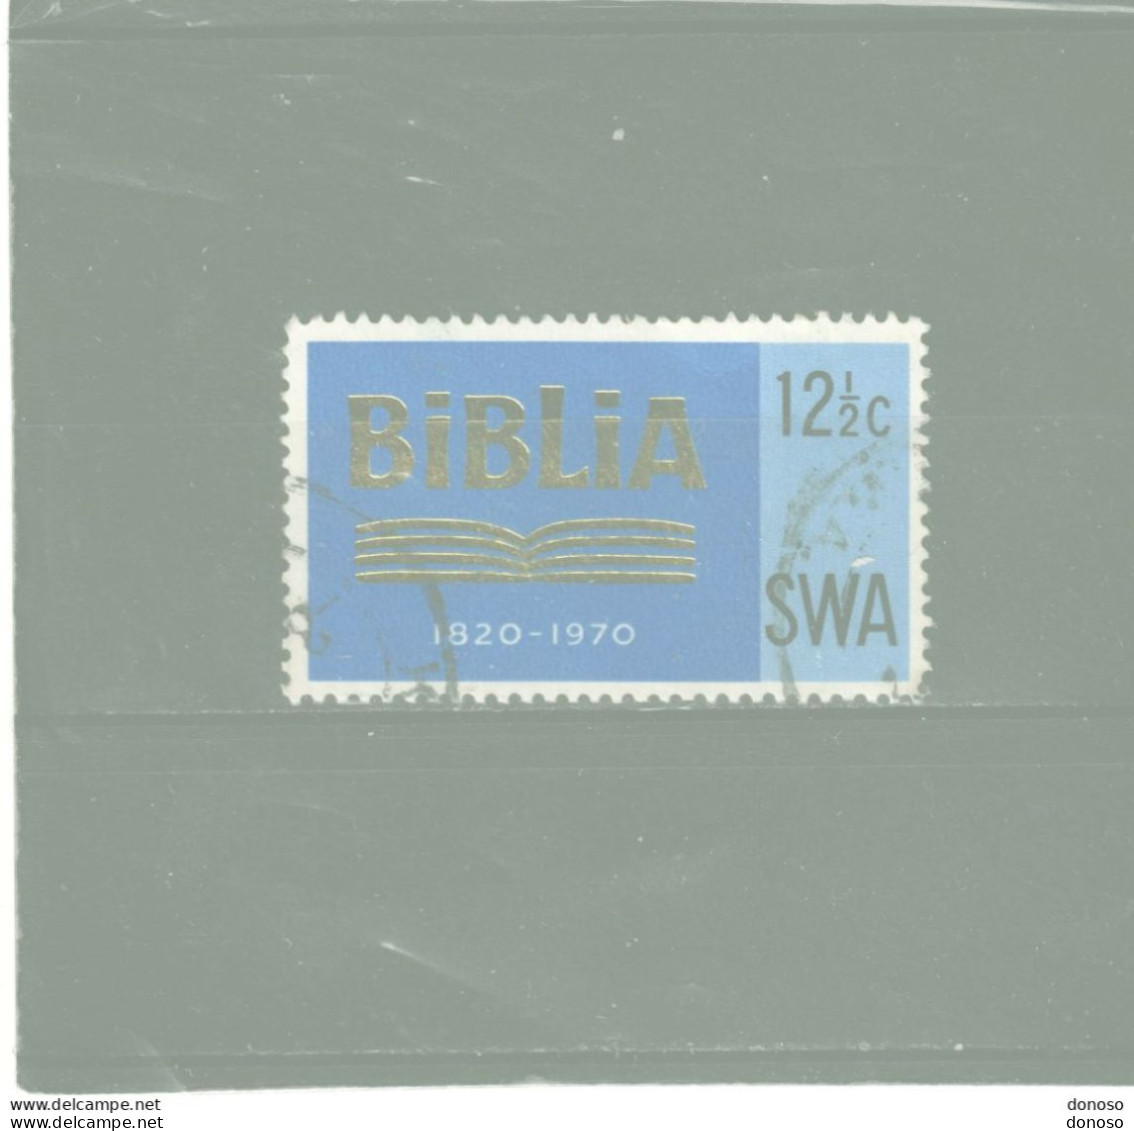 SWA SUD OUEST AFRICAIN 1970 SOCIETE BIBLIQUE Yvert 303, Michel 359  Oblitéré Cote Yv 33 Euros - Südwestafrika (1923-1990)